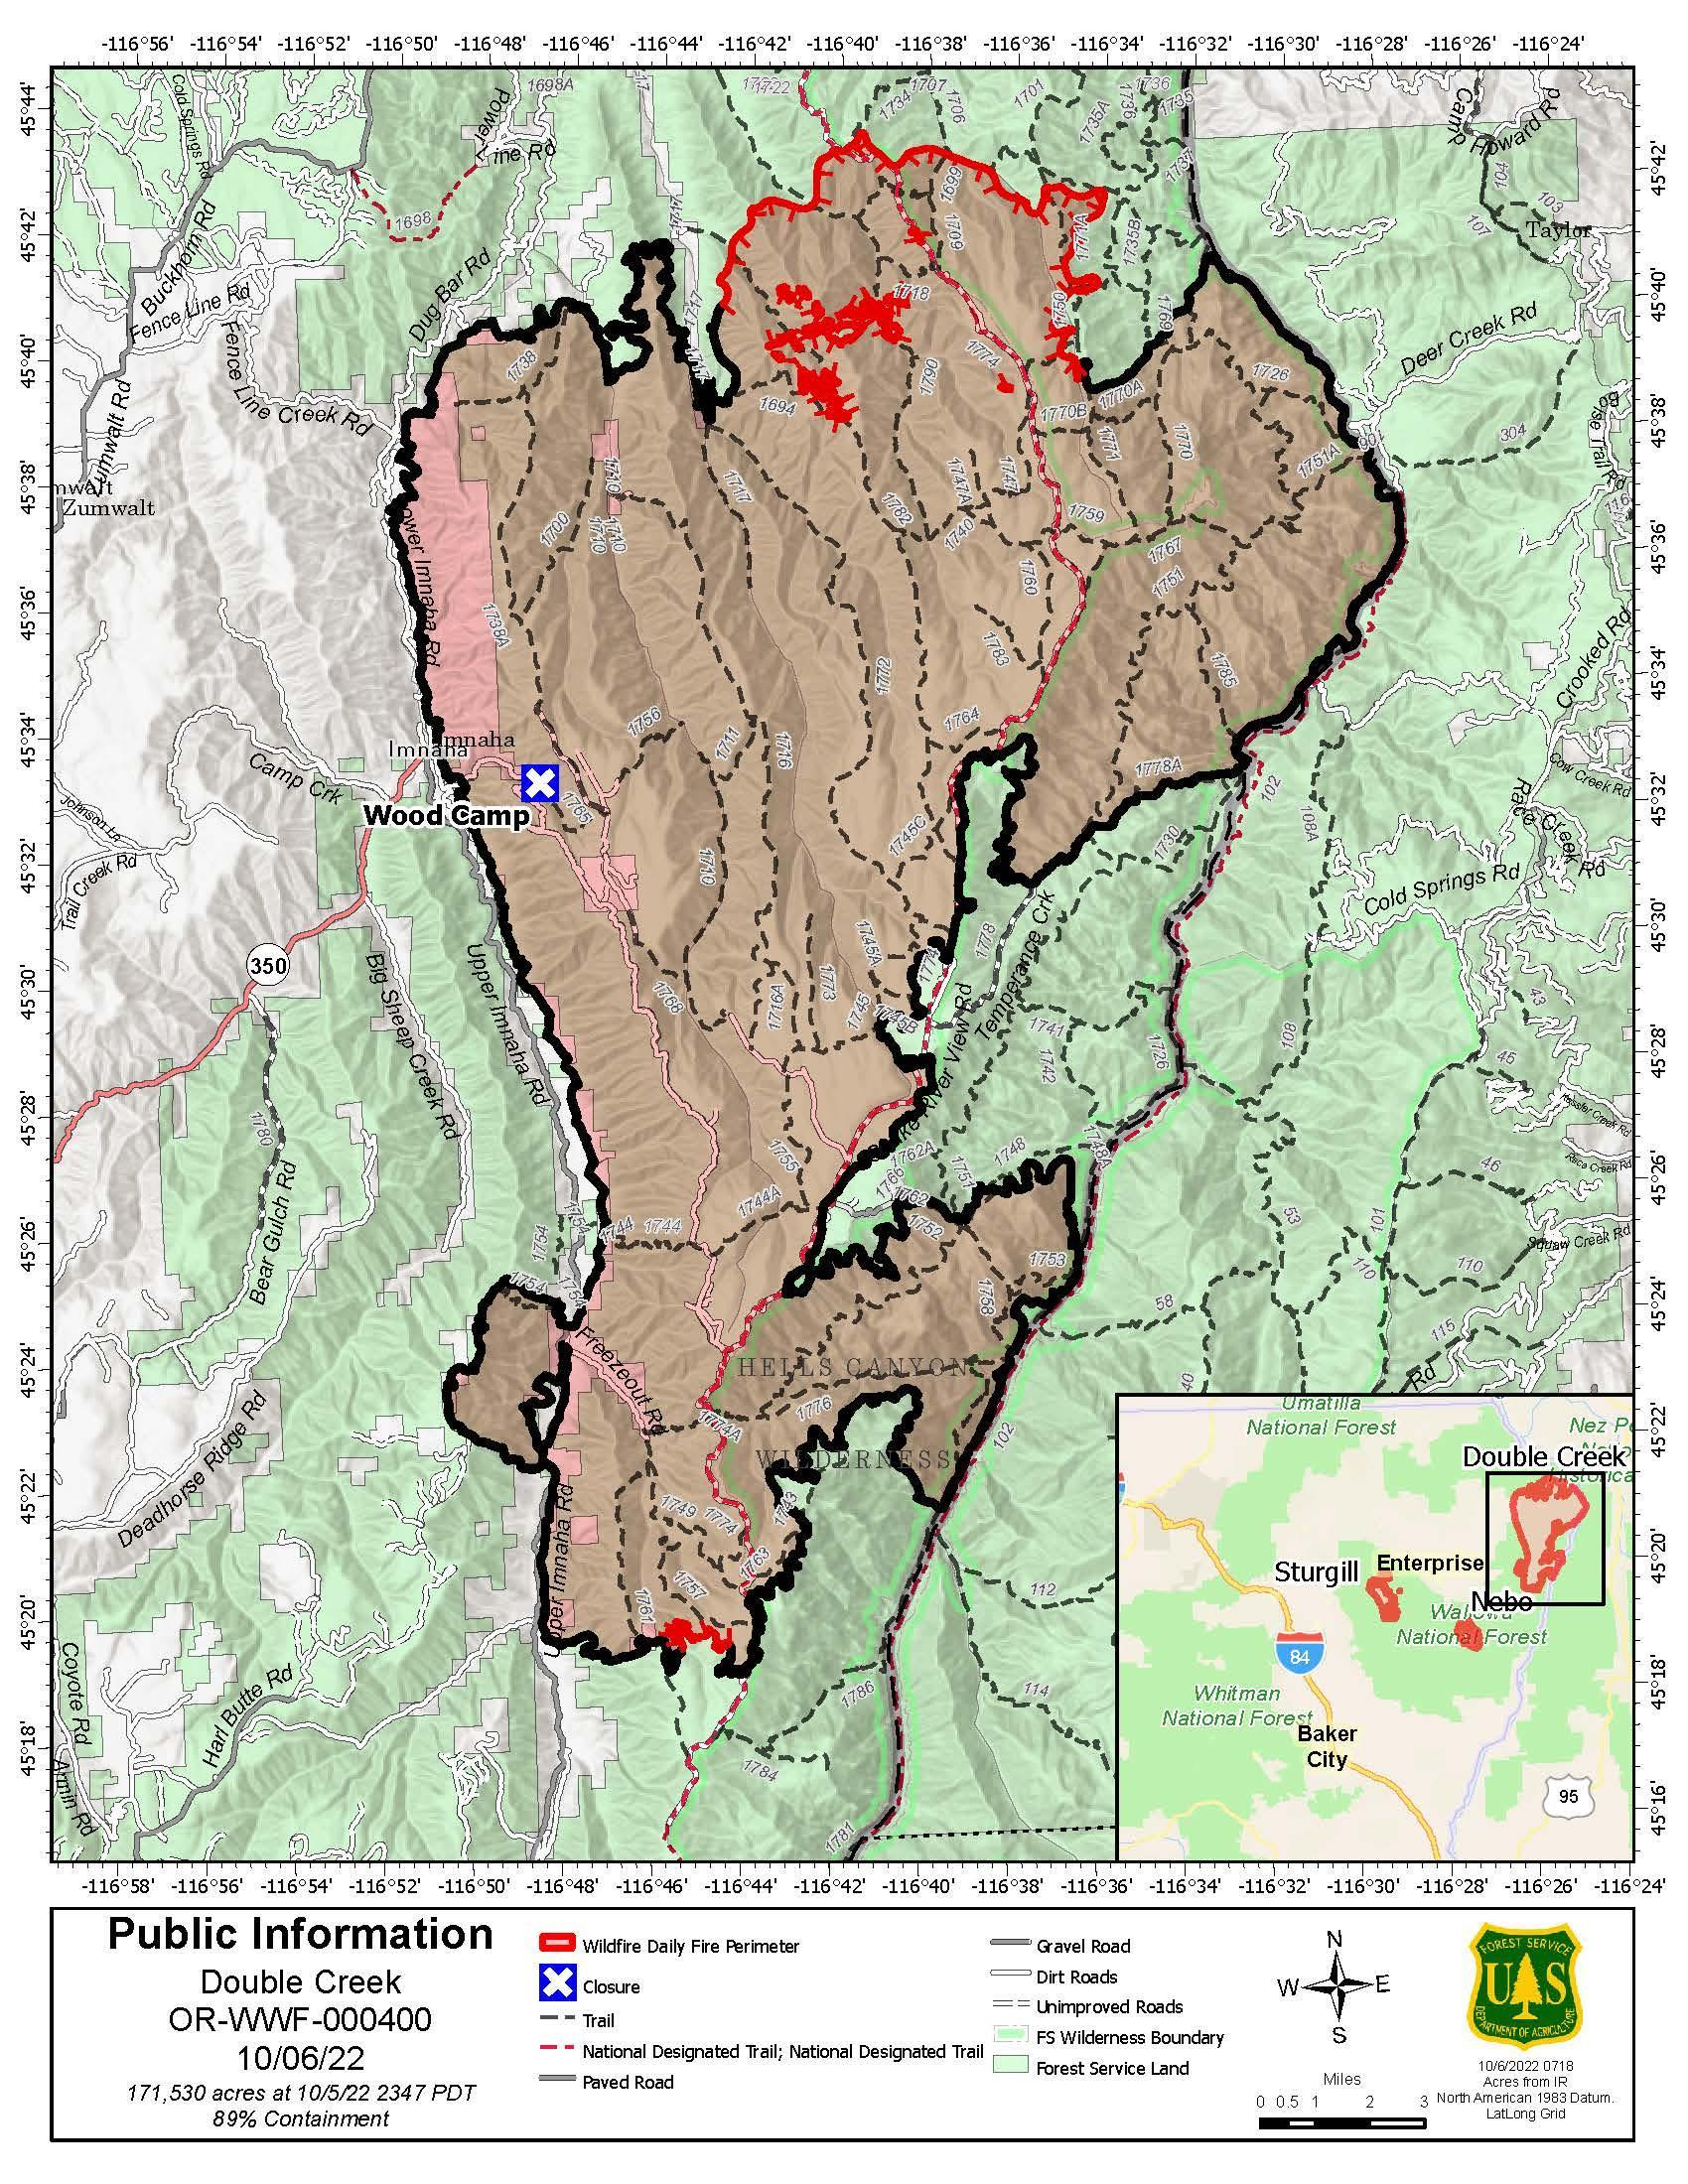 Double Creek Fire Map - 10/06/2022